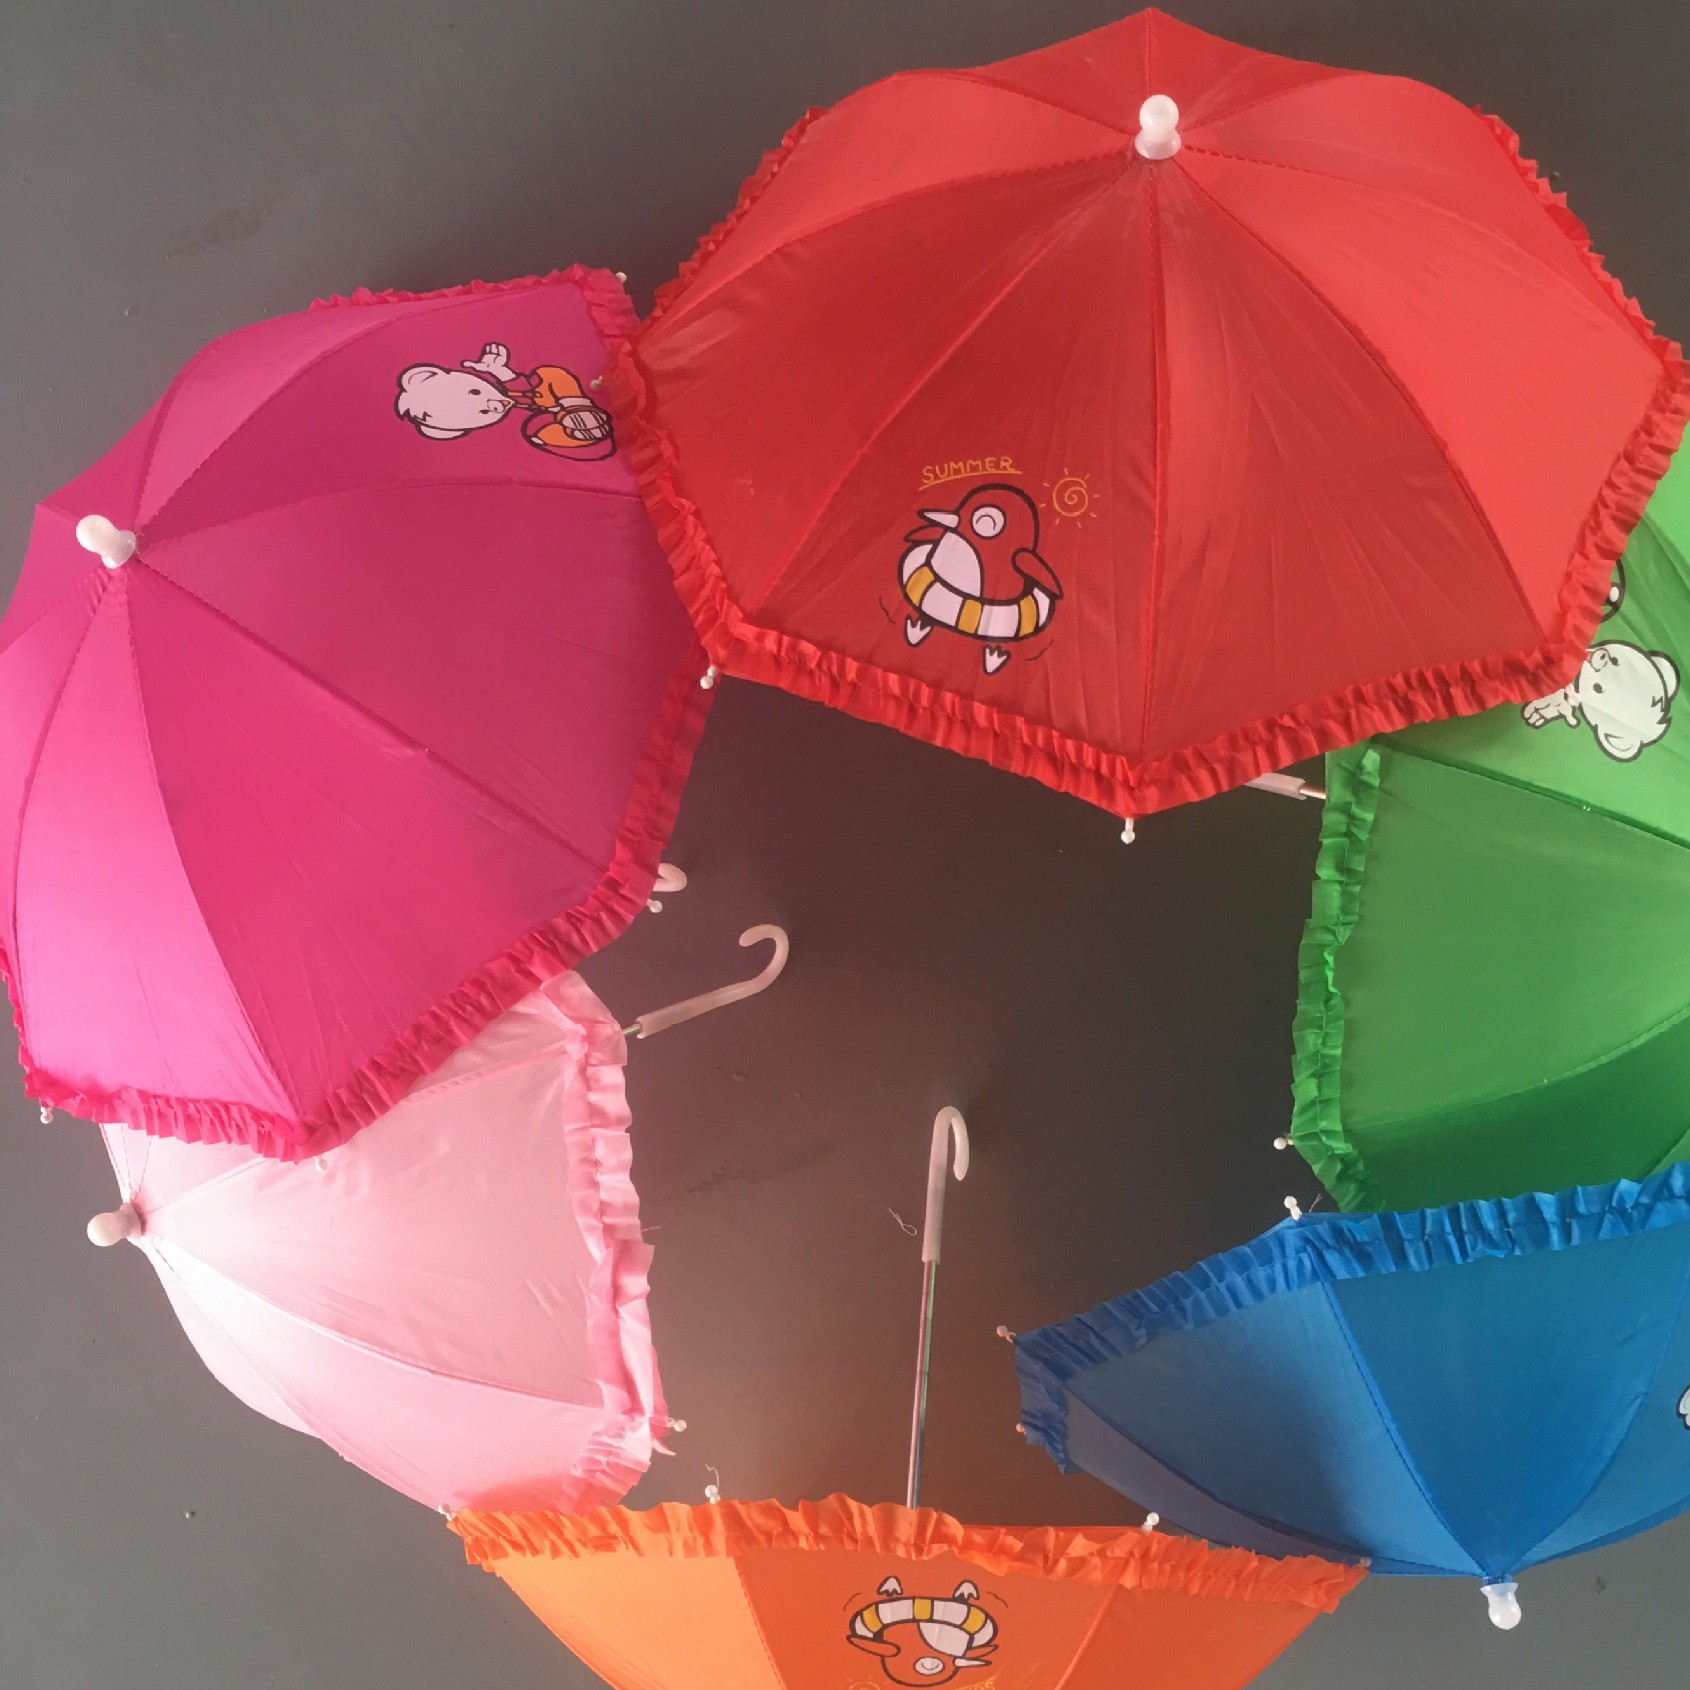 Wholesale umbrella with lace umbrella toys children's umbrella mini props craft umbrella personality cartoon parasol hot